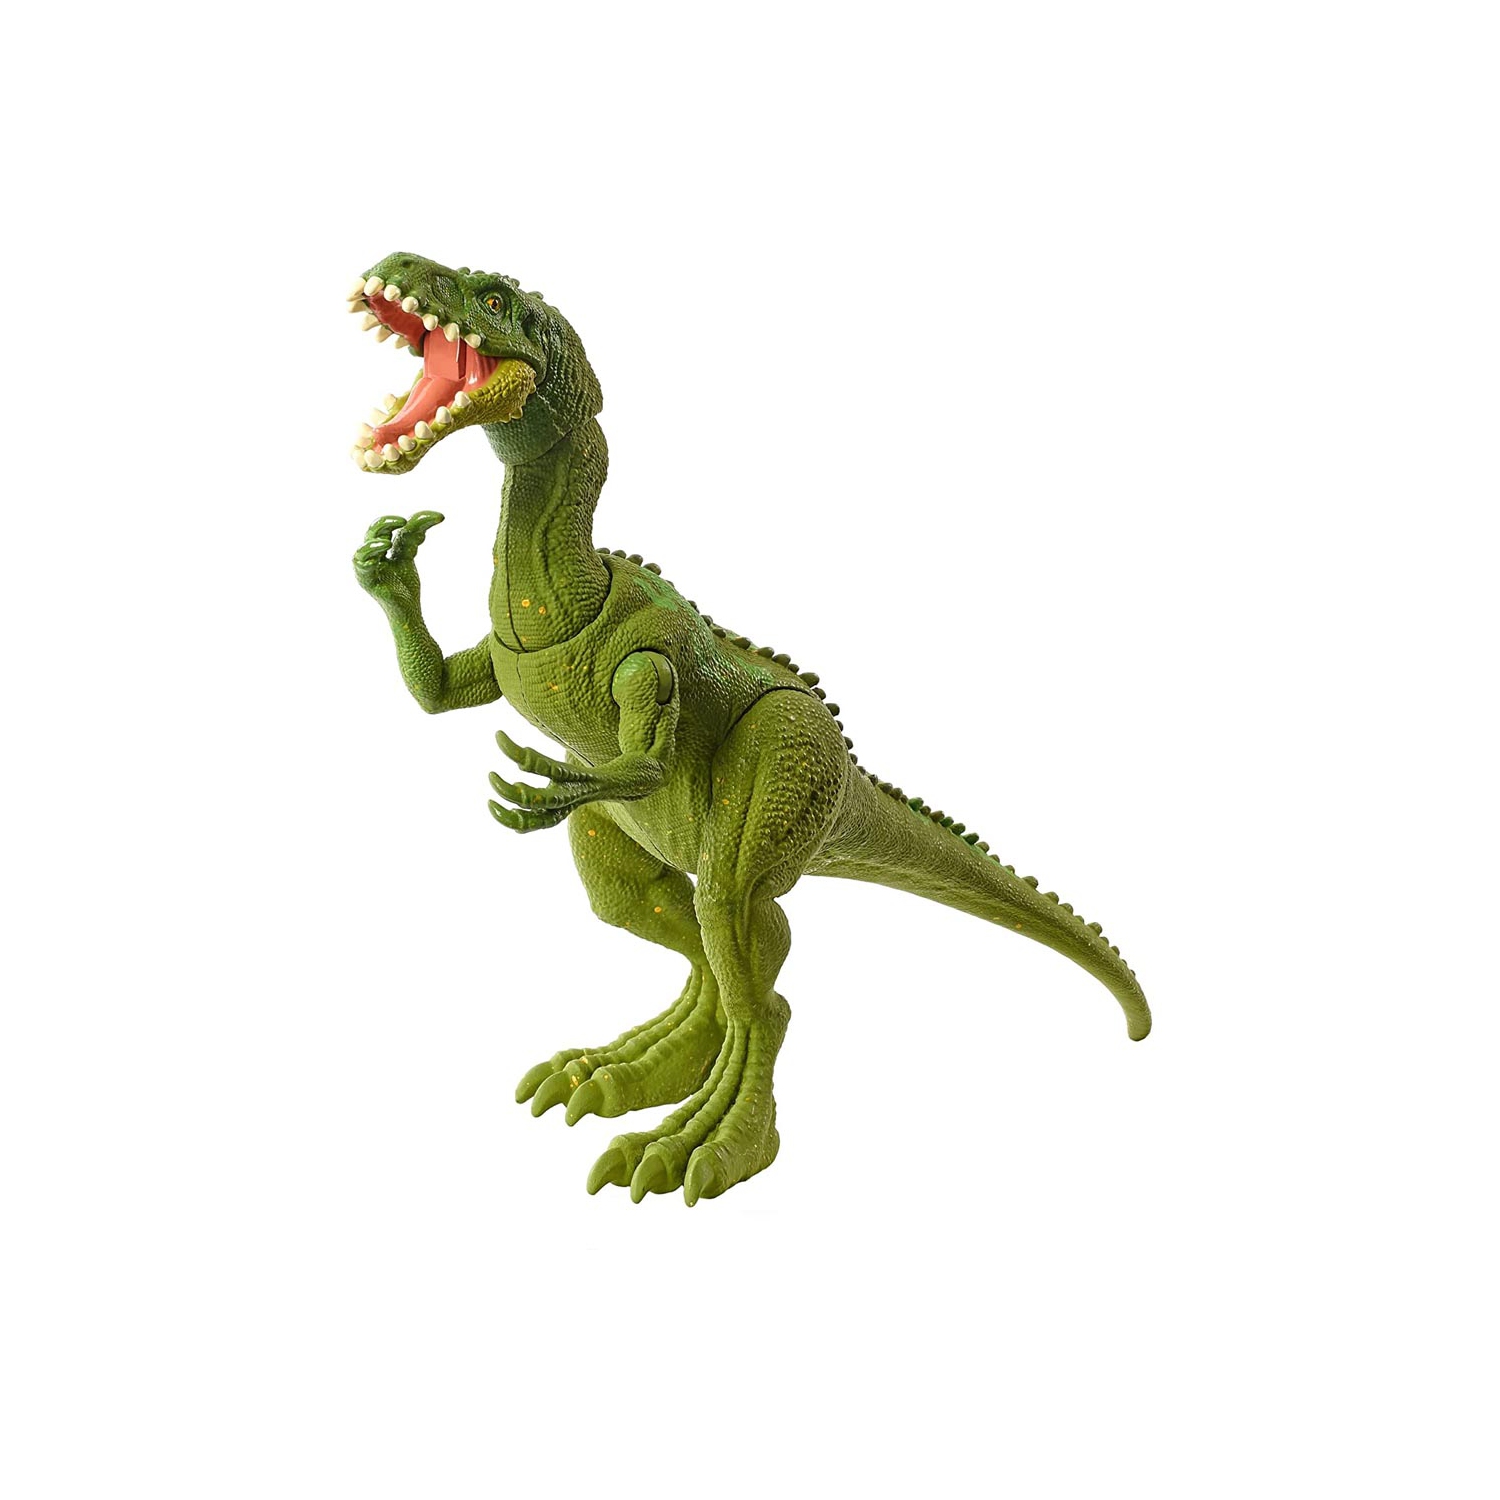 Jurassic World Masiakasaurus Dinosaur Action Figure with Single Strike Feature